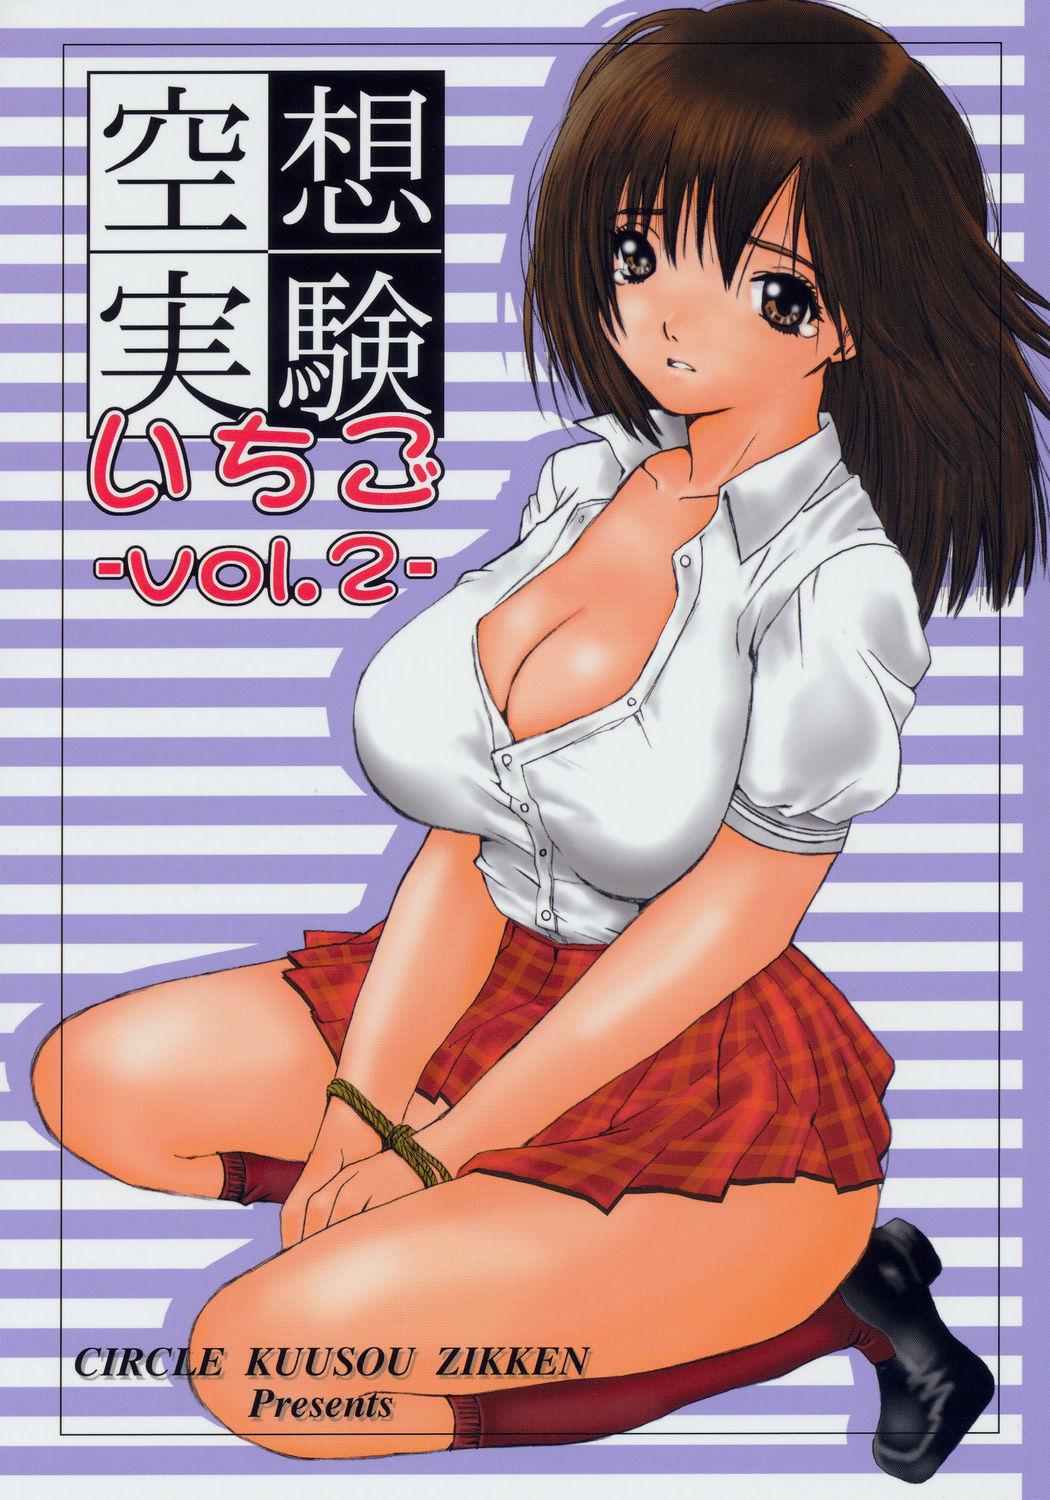 Top Kuusou Zikken Ichigo Vol.2 - Ichigo 100 Futa - Picture 1